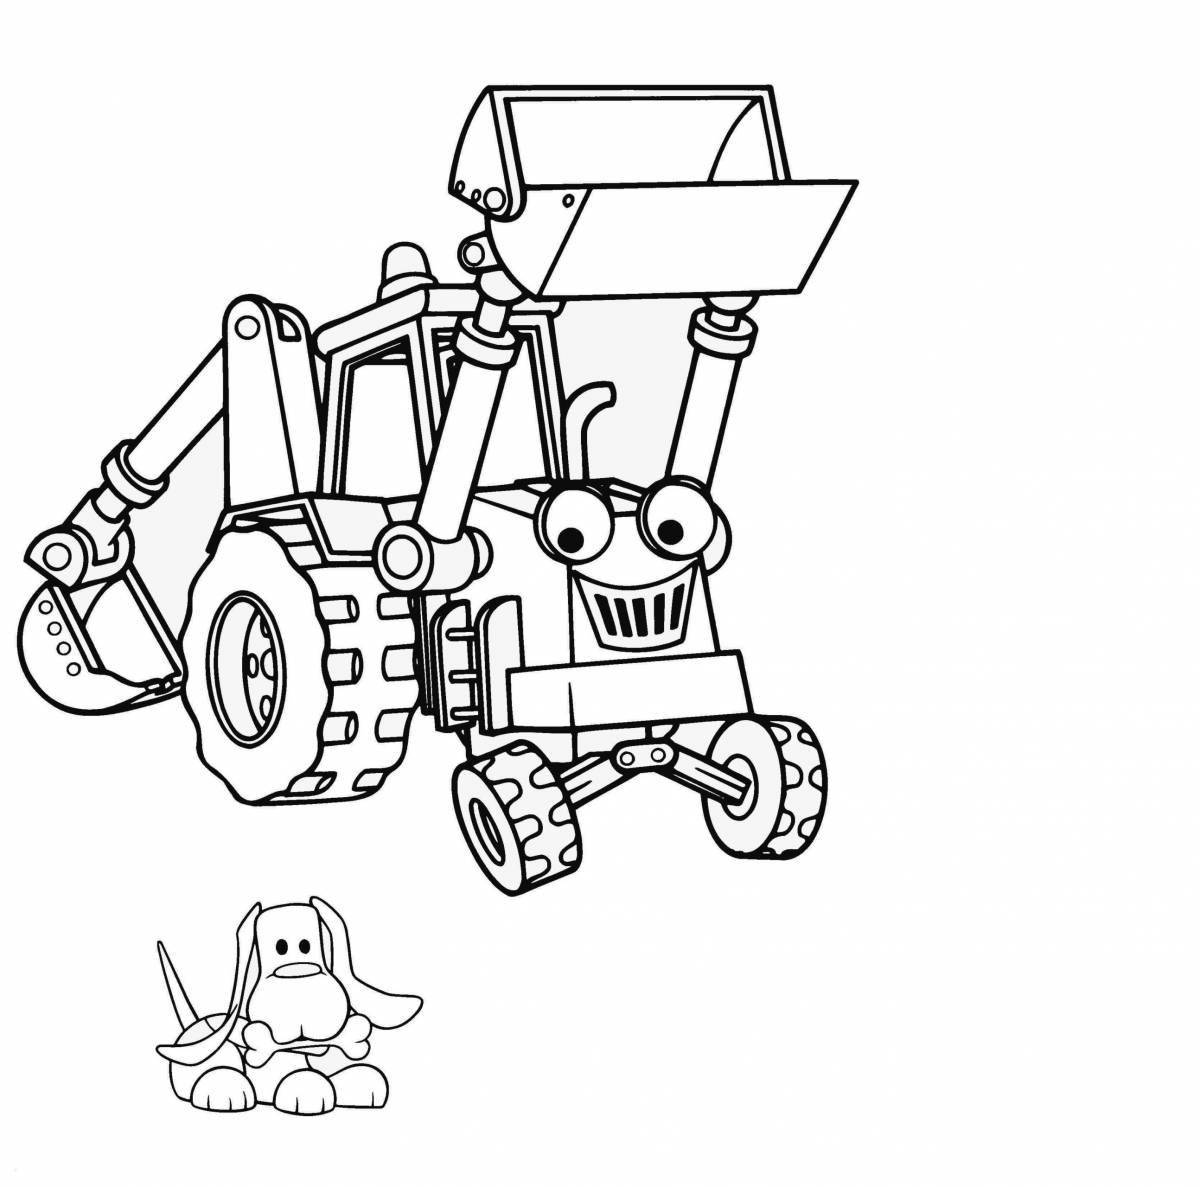 Fancy tractors cartoon coloring page